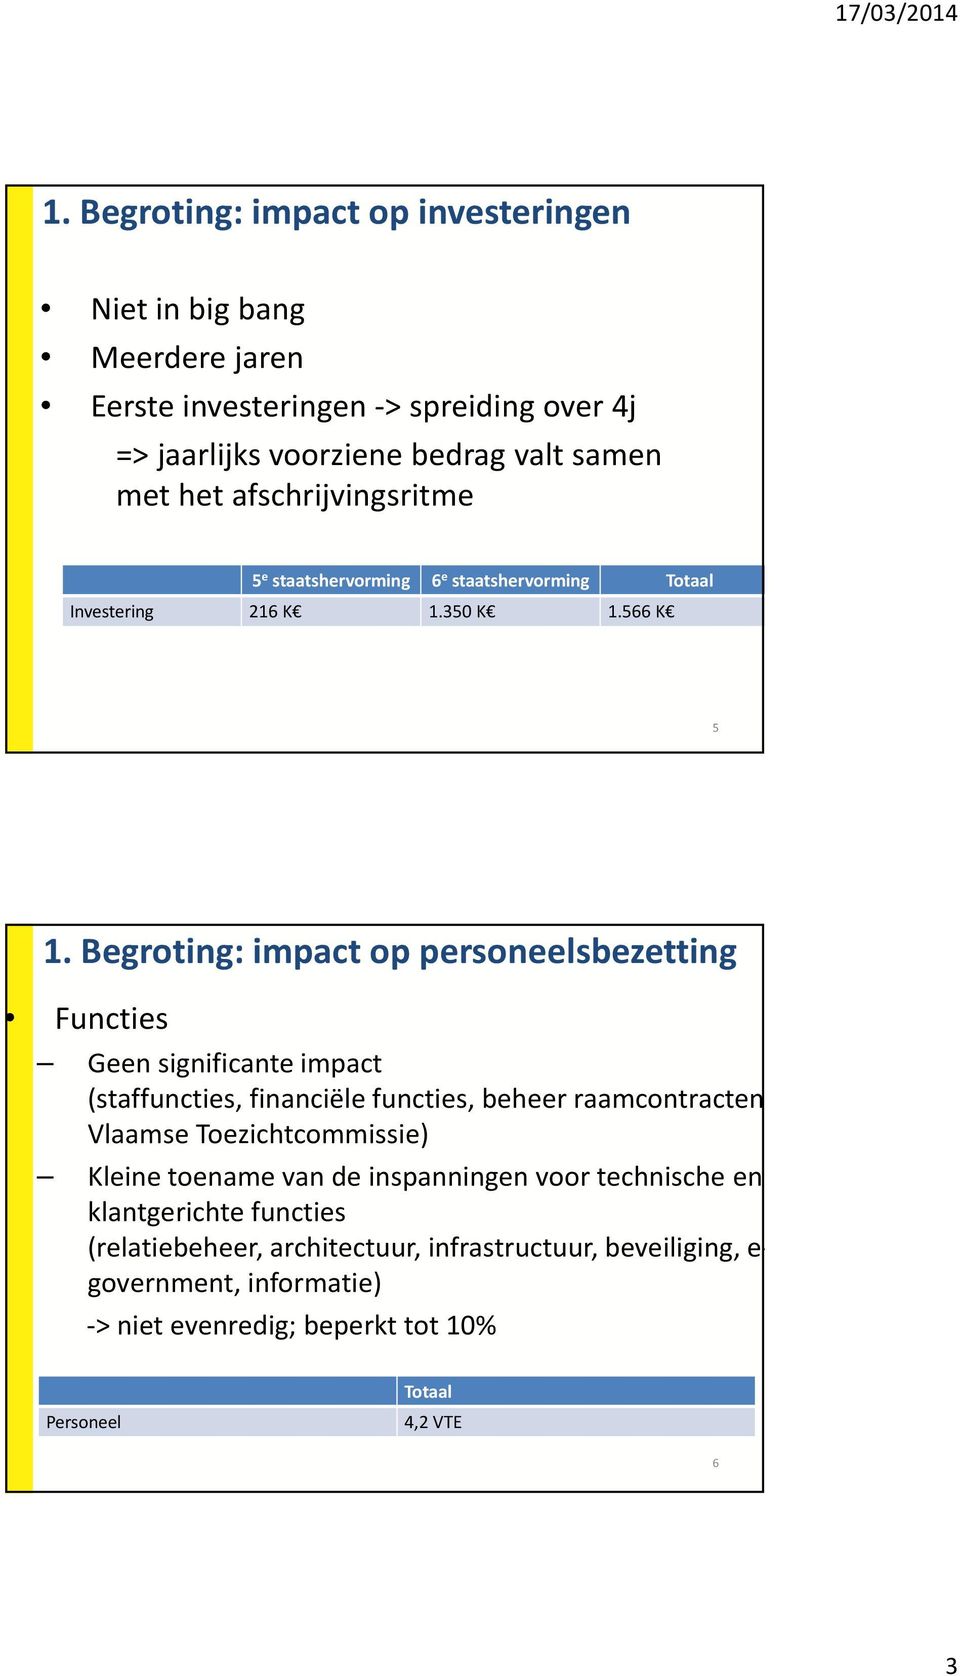 Begroting: impact op personeelsbezetting Functies Geen significante impact (staffuncties, financiële functies, beheer raamcontracten, Vlaamse Toezichtcommissie)